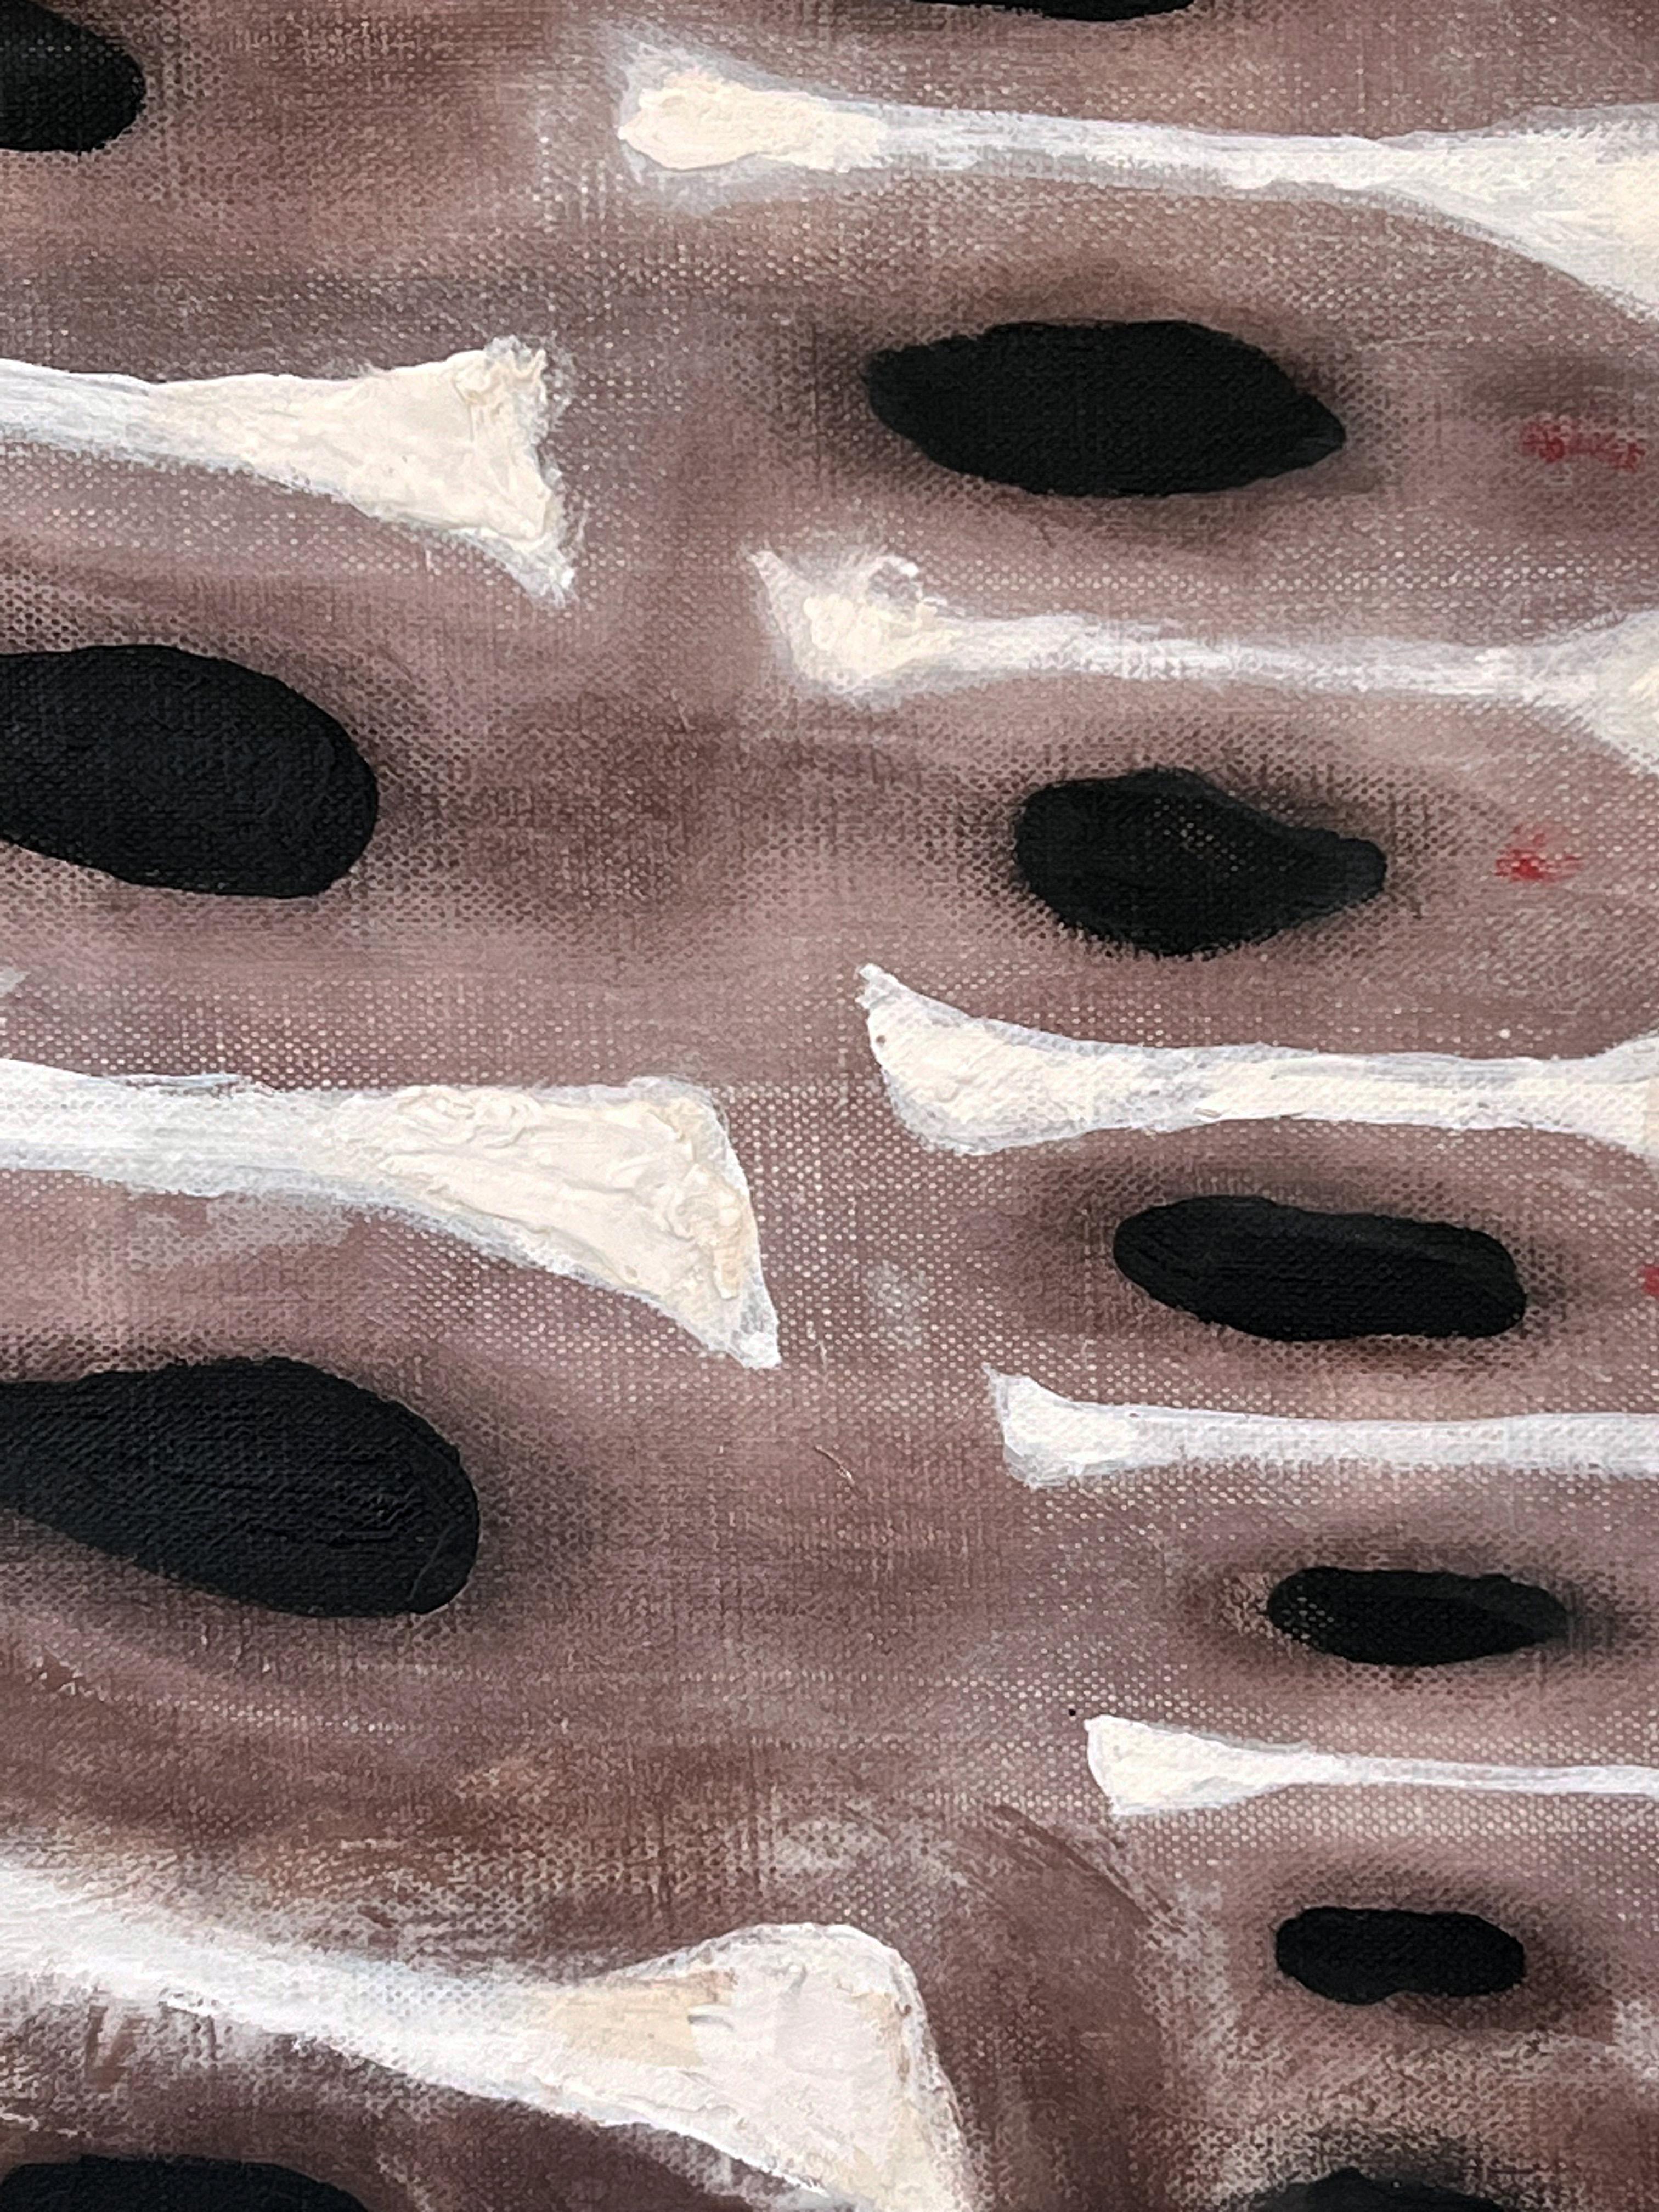 PLATO'S HÖLLE
2024, Paris, Frankreich

Ein kühnes und grafisches Schwarz-Weiß-Gemälde mit primitiven Untertönen. Schwarze und weiße Acrylfarbe liegt über einer violett-braunen Wäsche und formt Formen. Sehr dezente, kleine, rote Kreisformen sind an